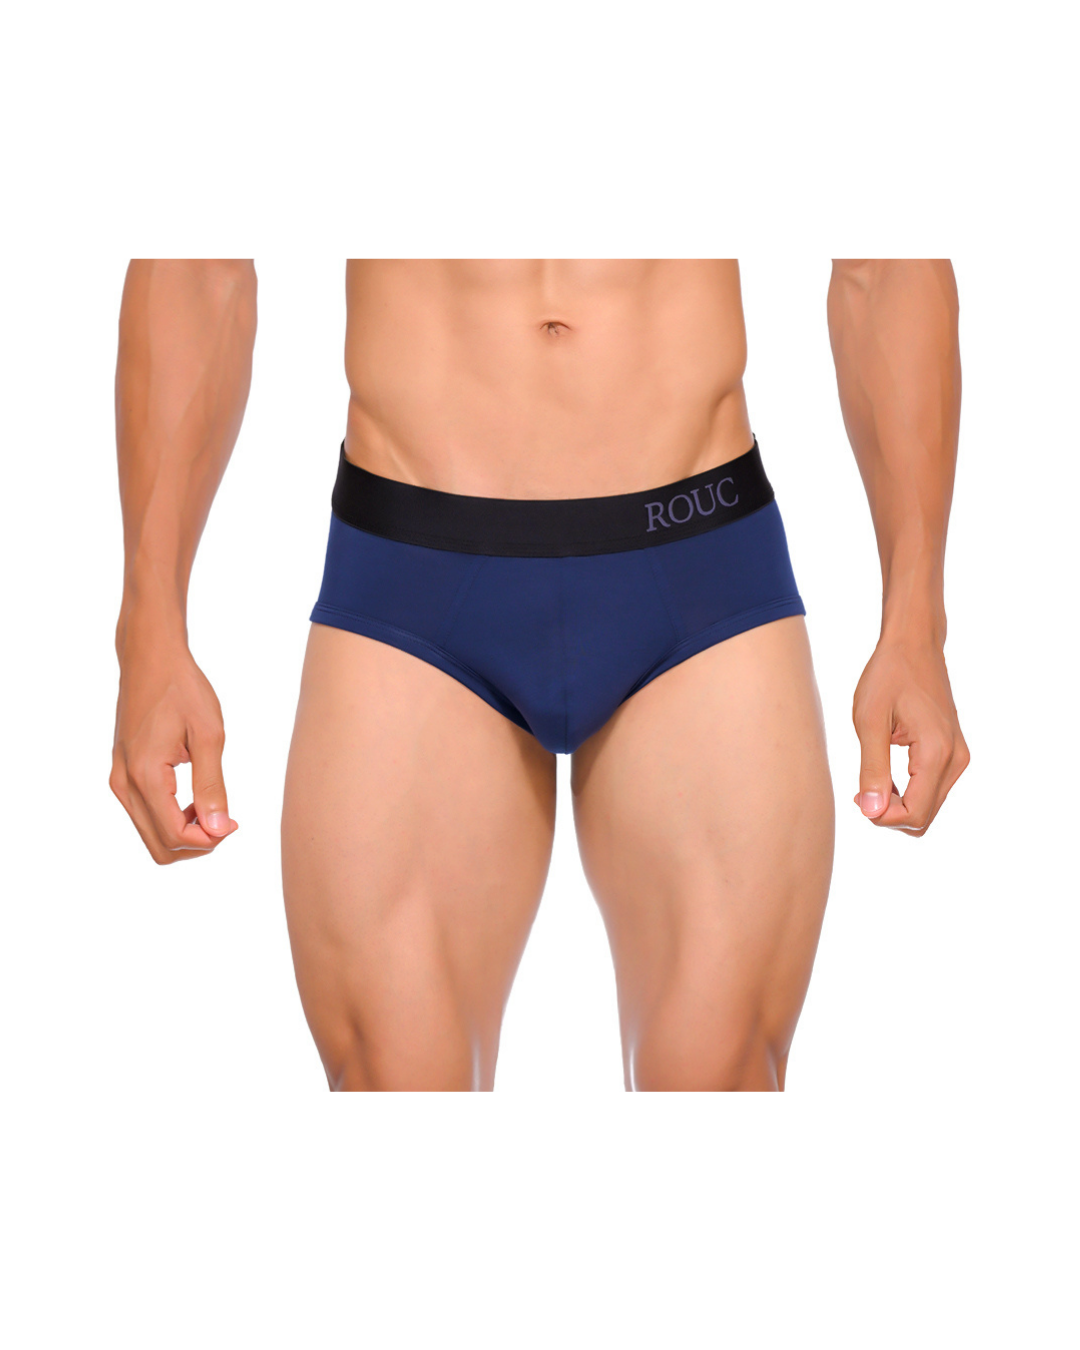 Men Underwear - BRIEFS - 2 Pack (Black & Blue)